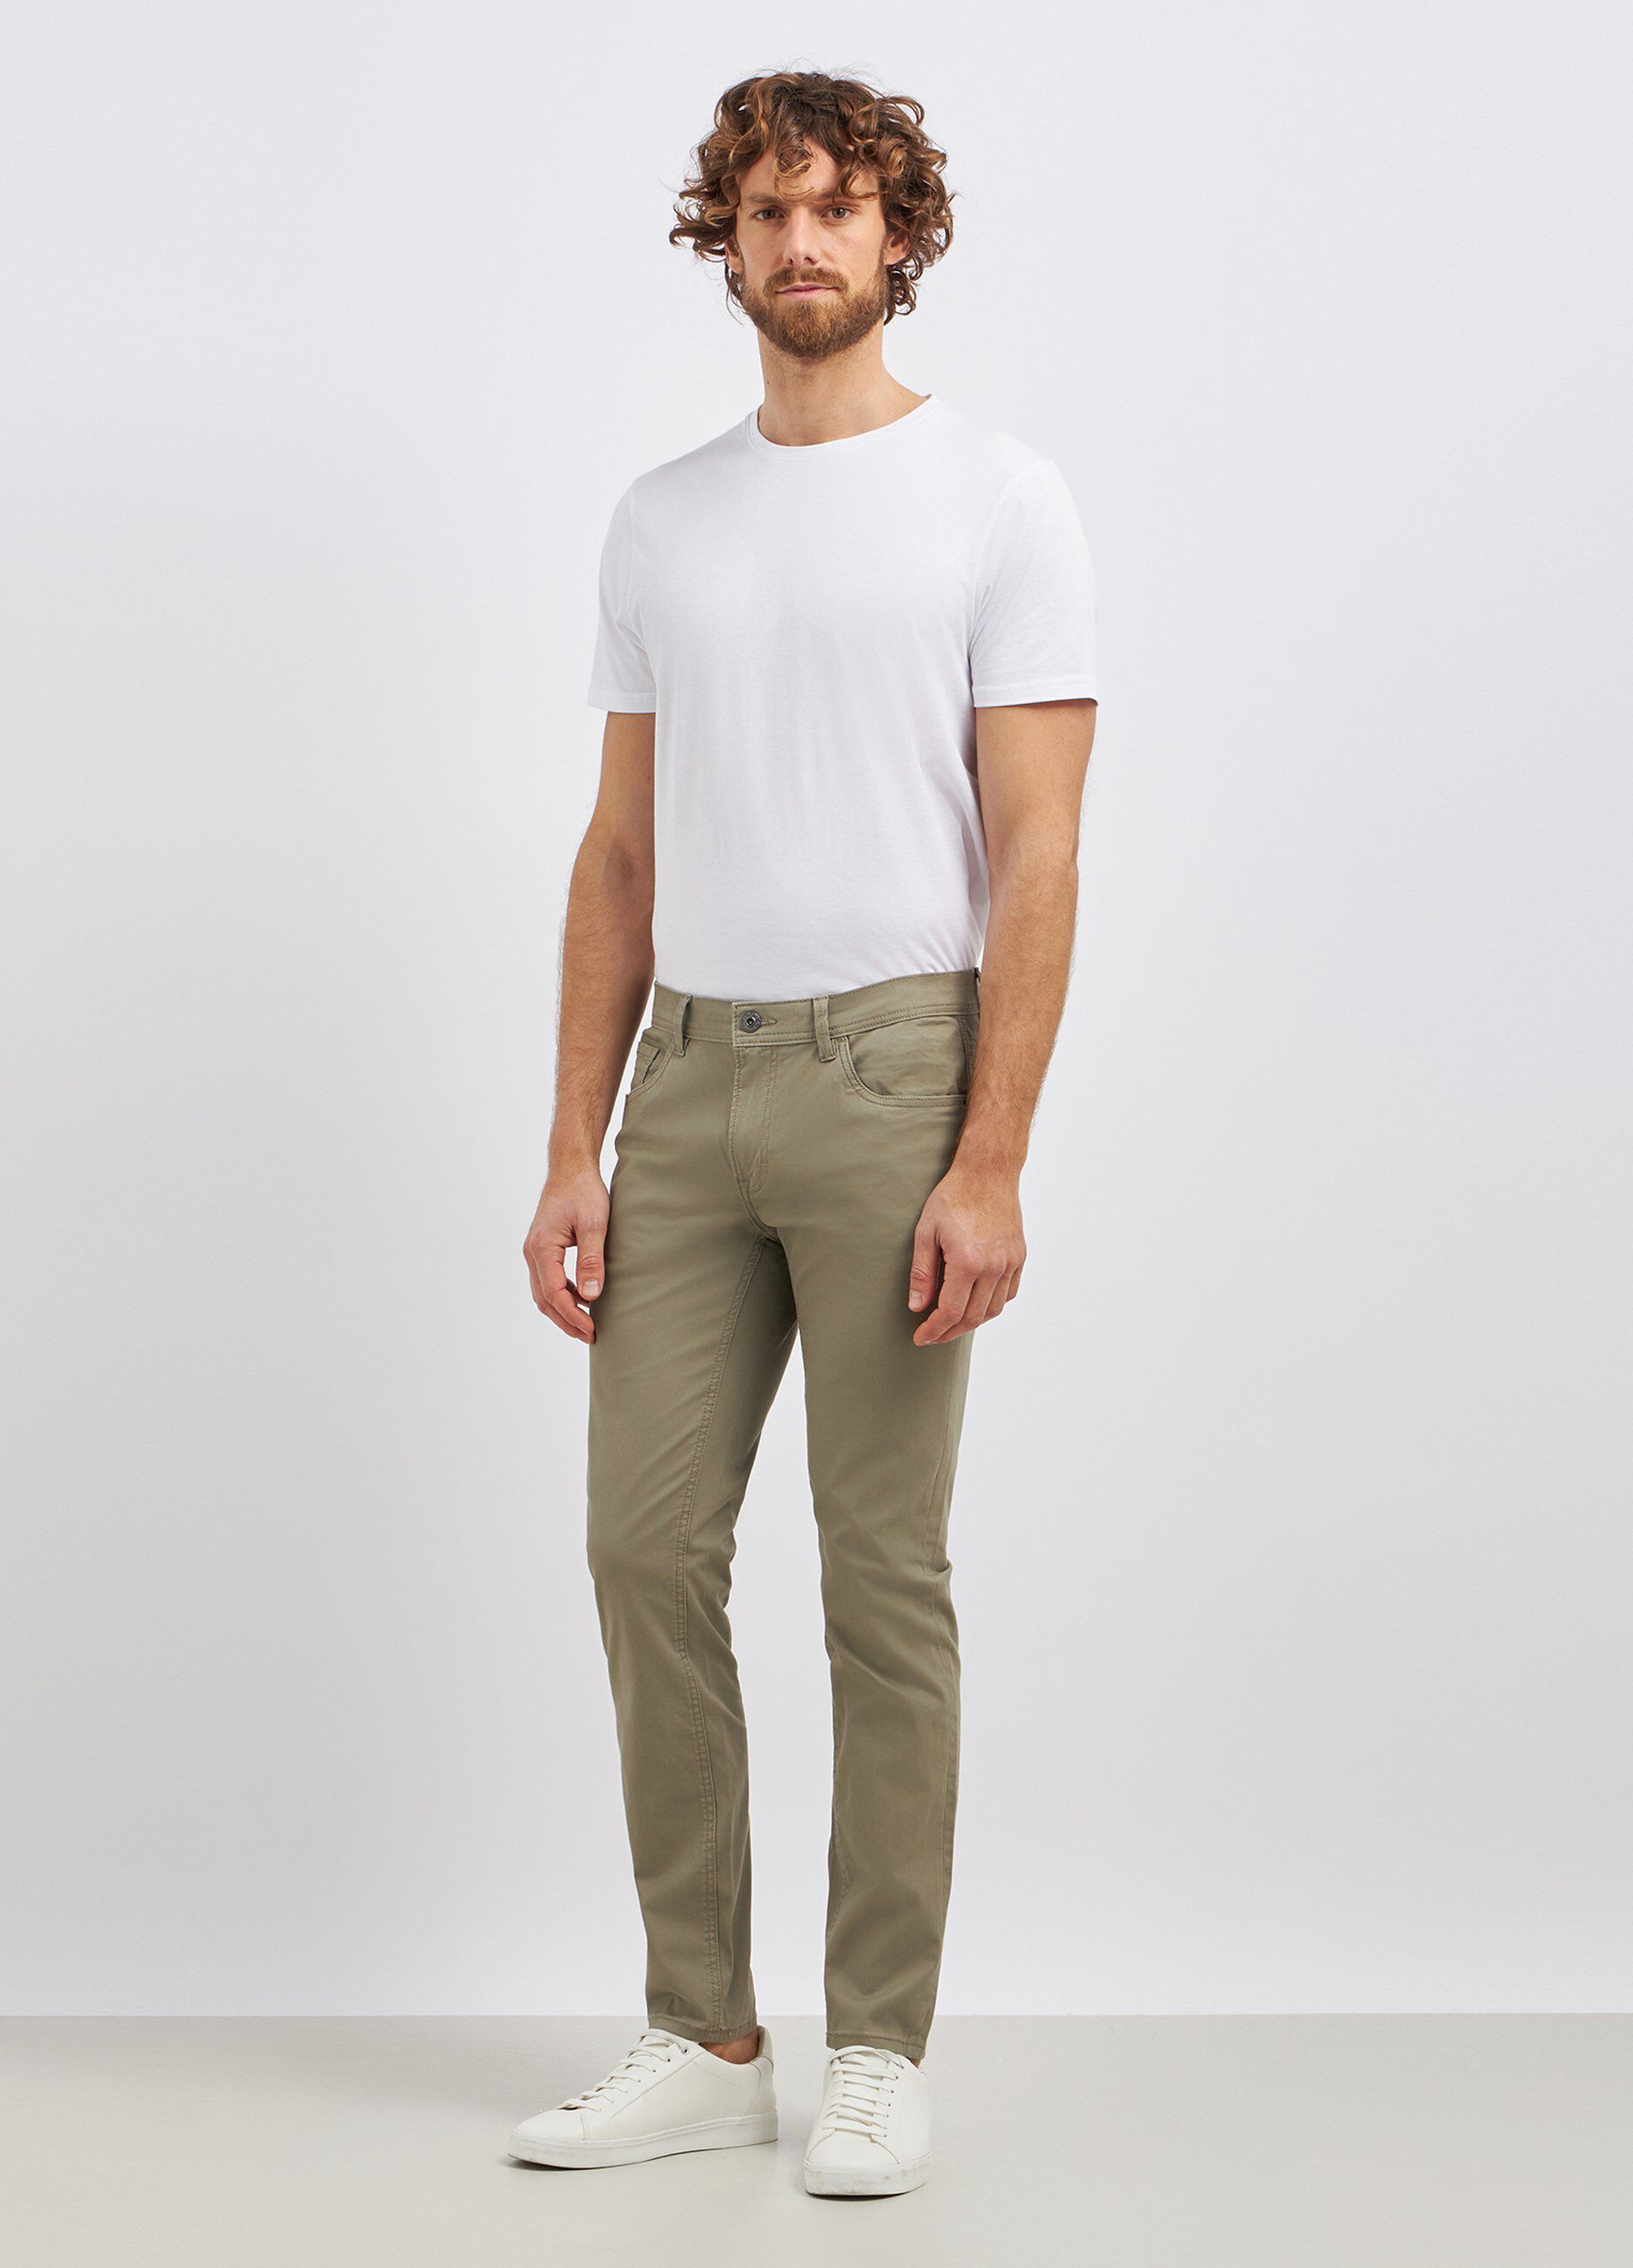 Pantaloni in puro cotone modello 5 tasche uomo_0